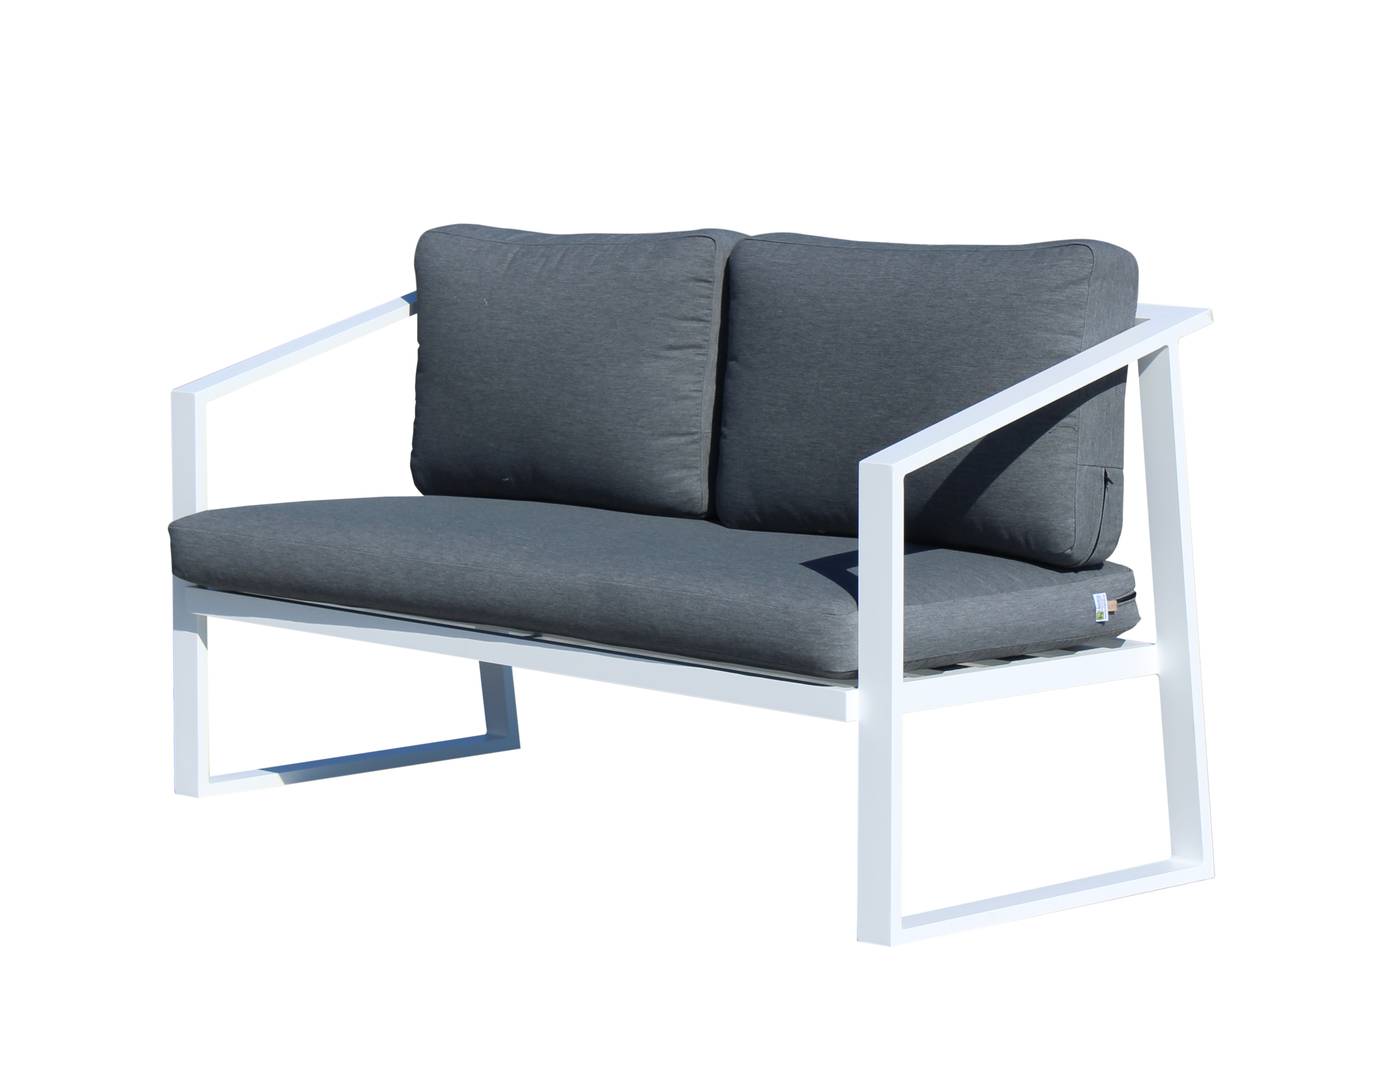 Set Aluminio Sadem-7 - Conjunto aluminio para exterior: sofá 2 plazas + 2 sillones + mesa de centro. Fabricado de aluminio en color blanco, antracita, champagne, plata o marrón.